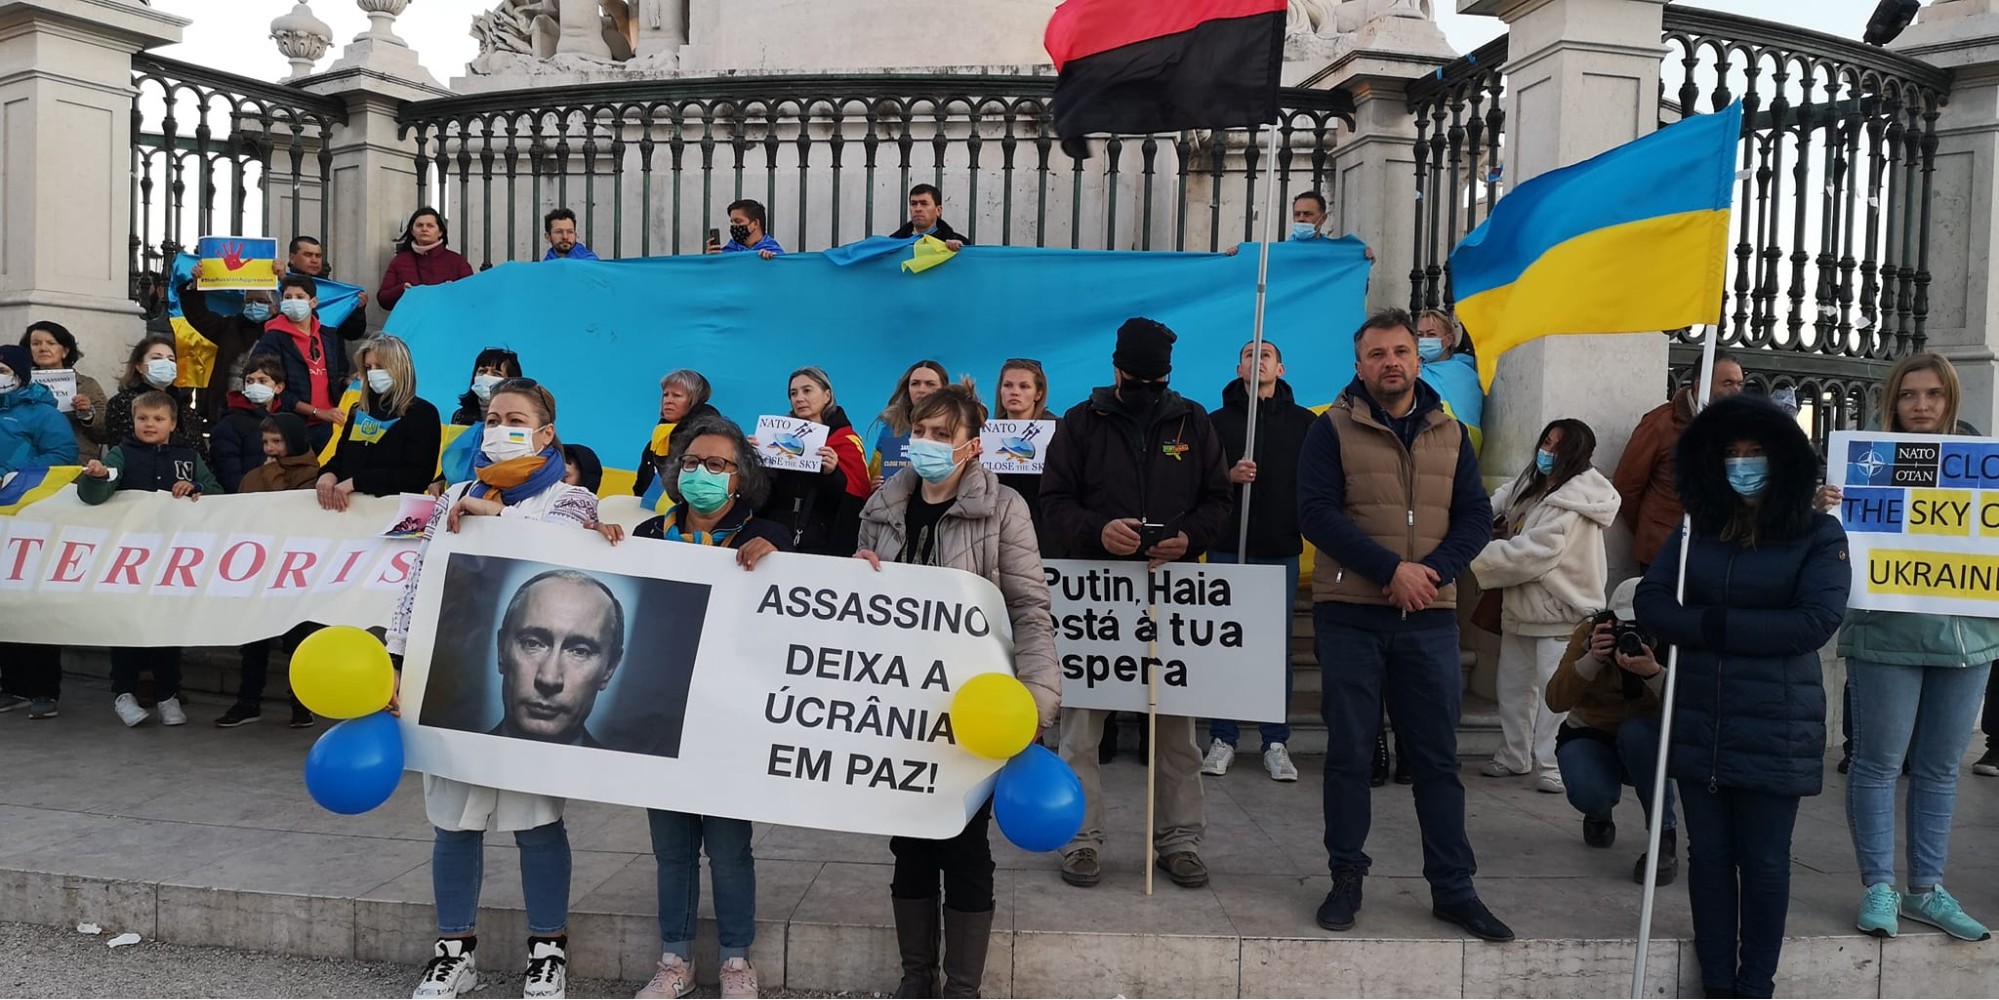 Вибиті ворота у посольстві та щоденні мітинги: як у світі підтримують Україну під час війни з Росією 5